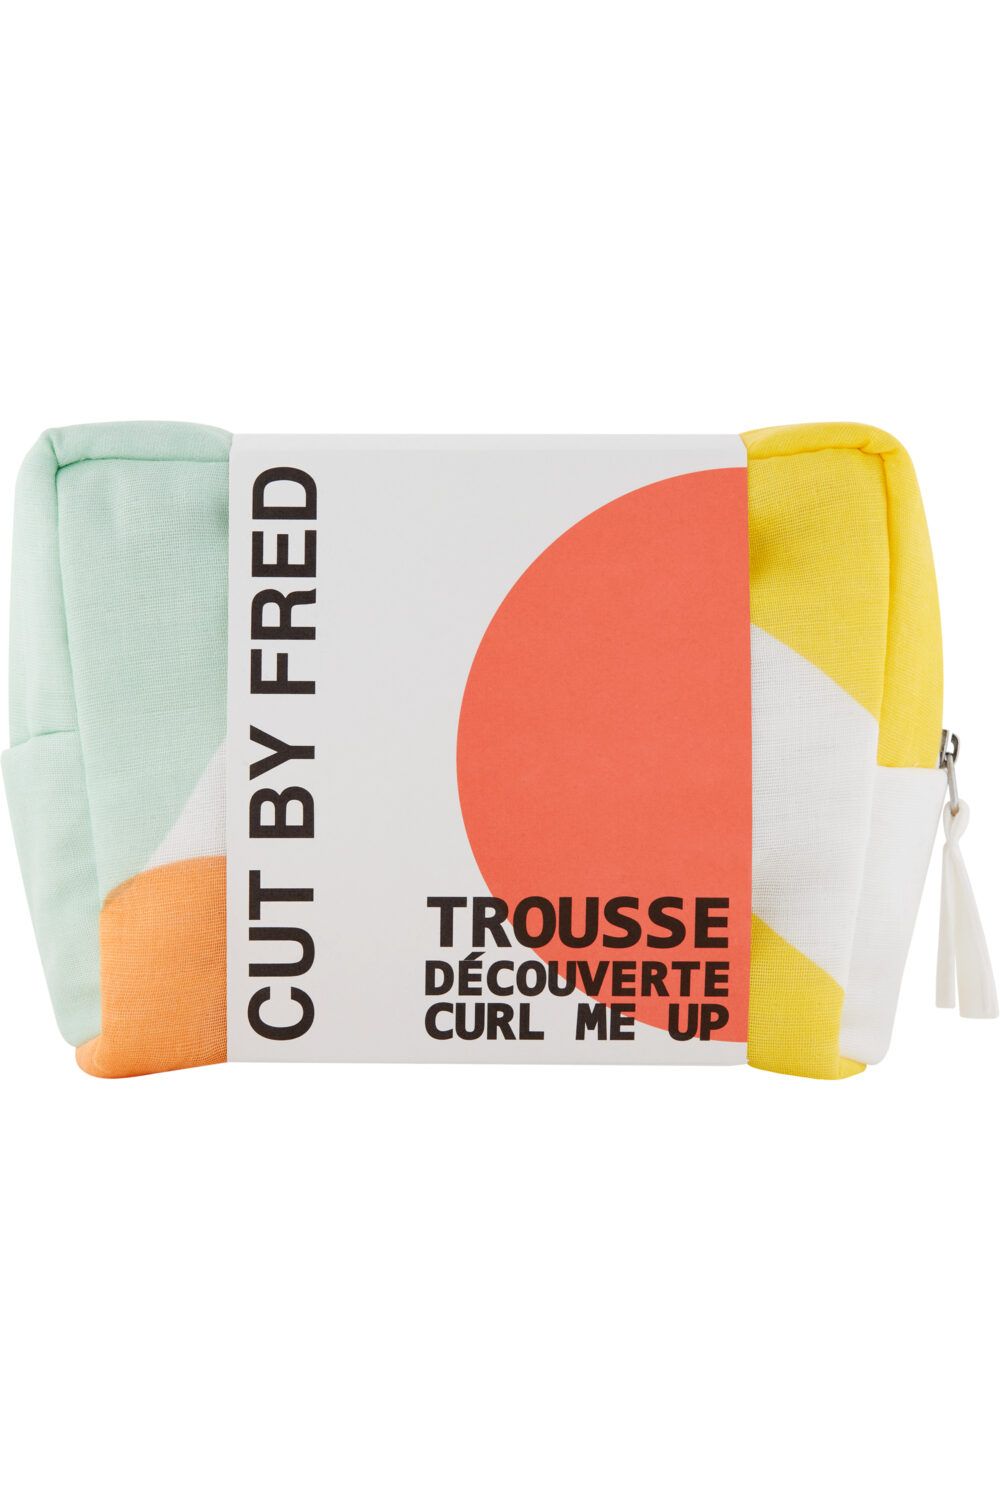 Cut by Fred - Trousse cheveux bouclés Curl Me Up édition 2023